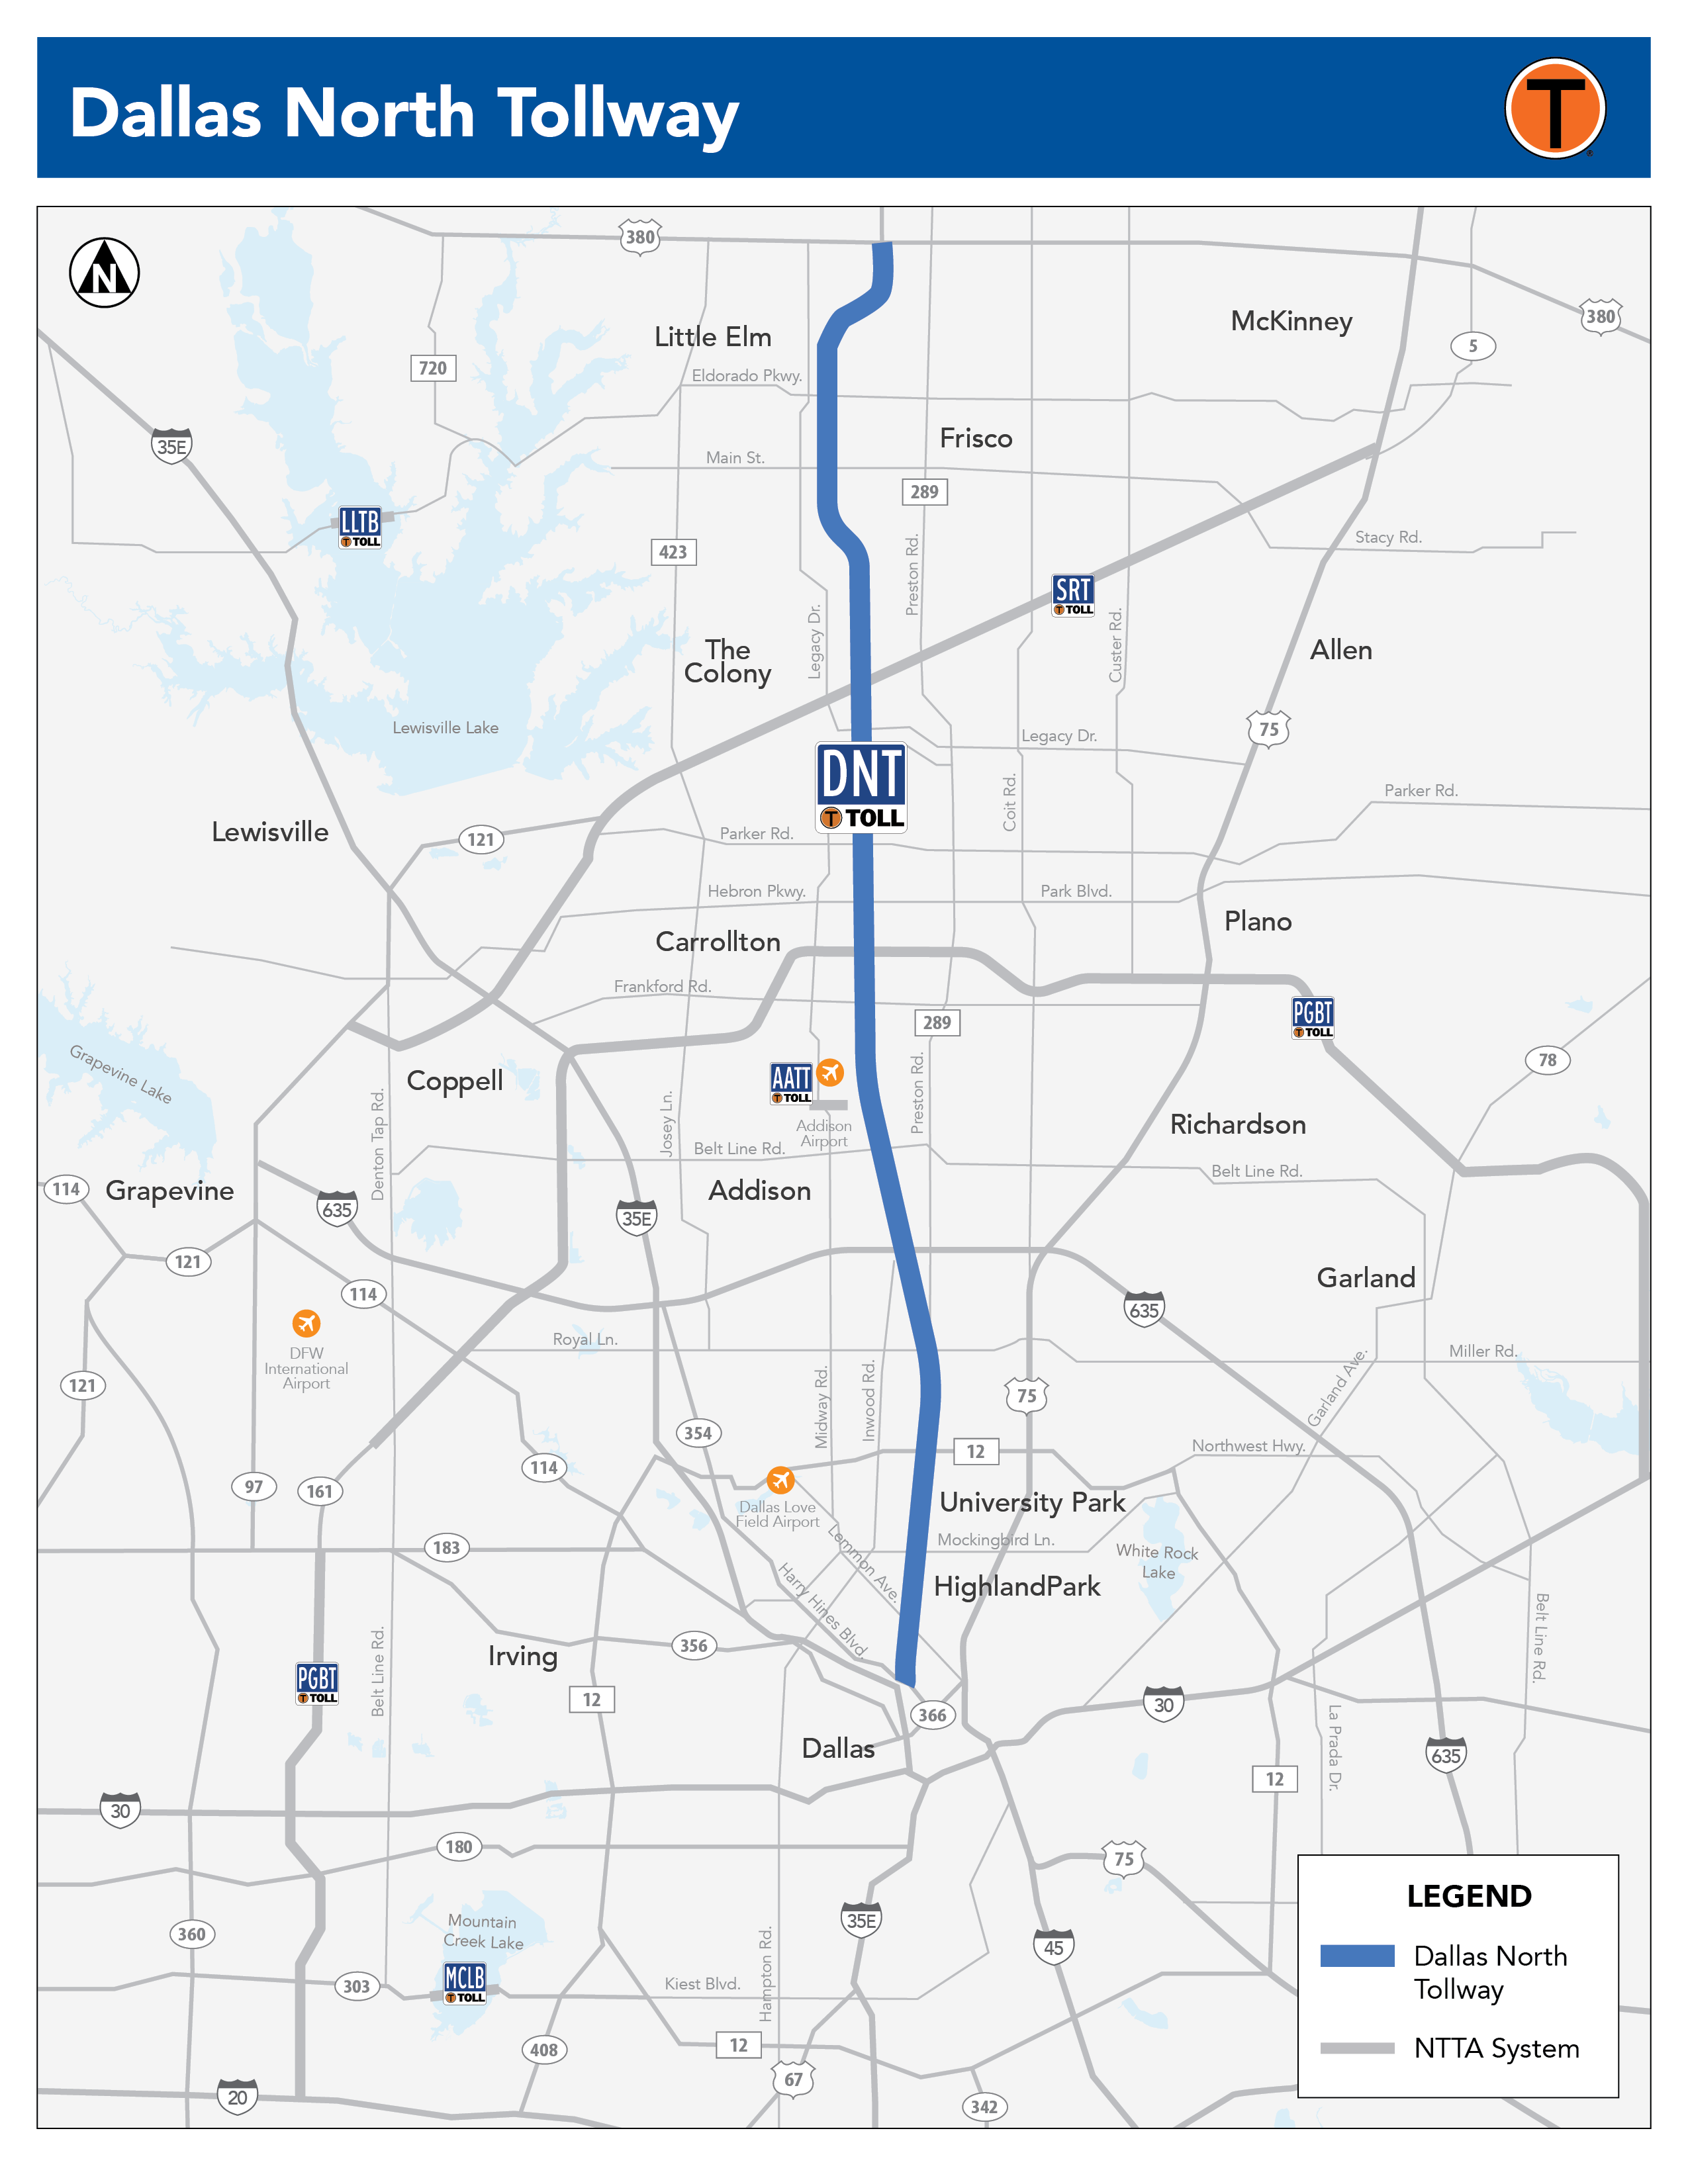 Dallas North Tollway (DNT) | NTTA